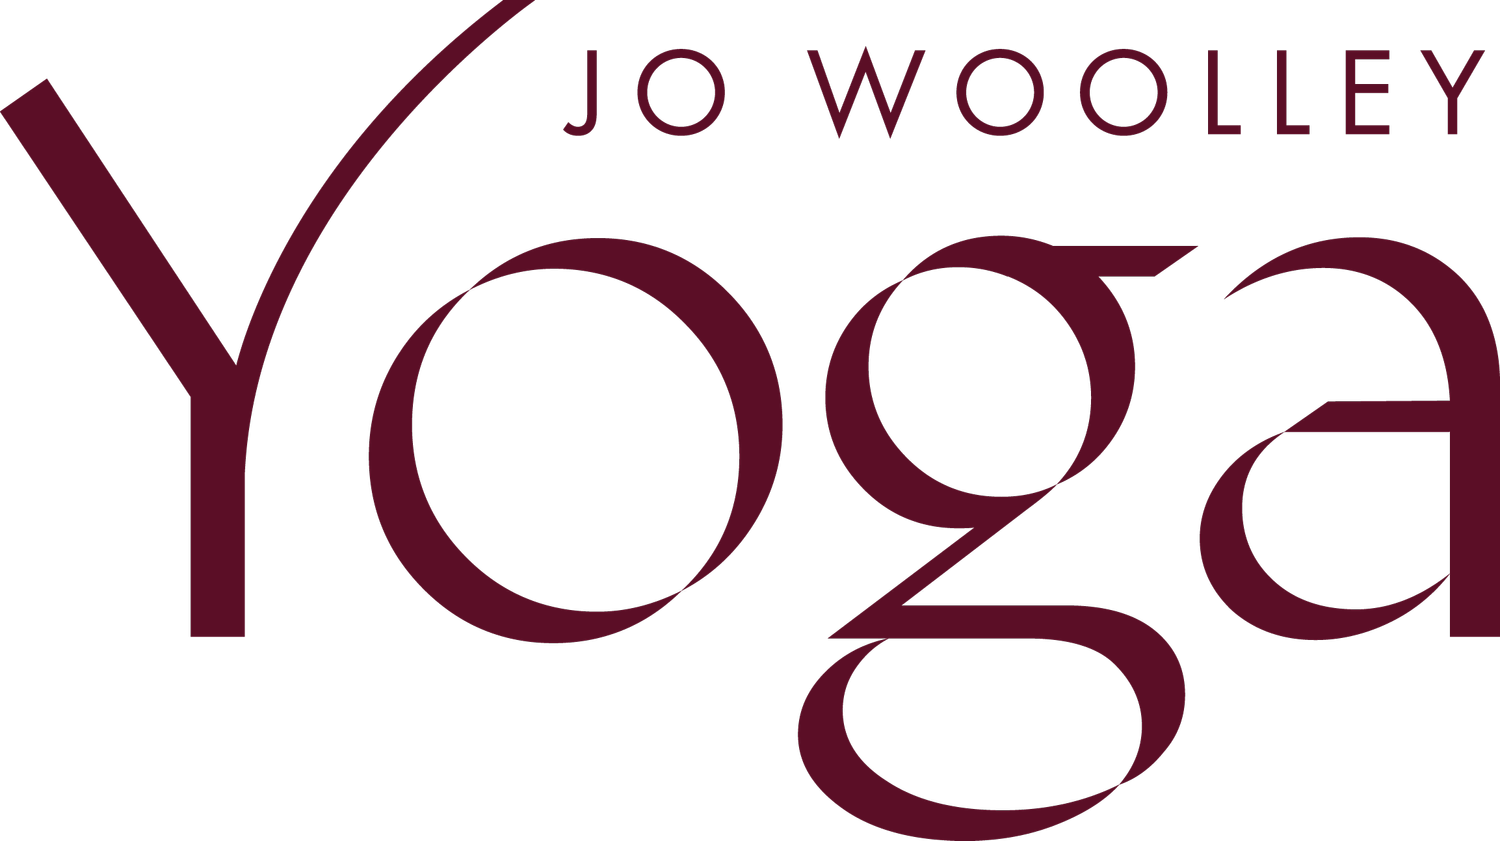 Jo Woolley Yoga - Dunedin